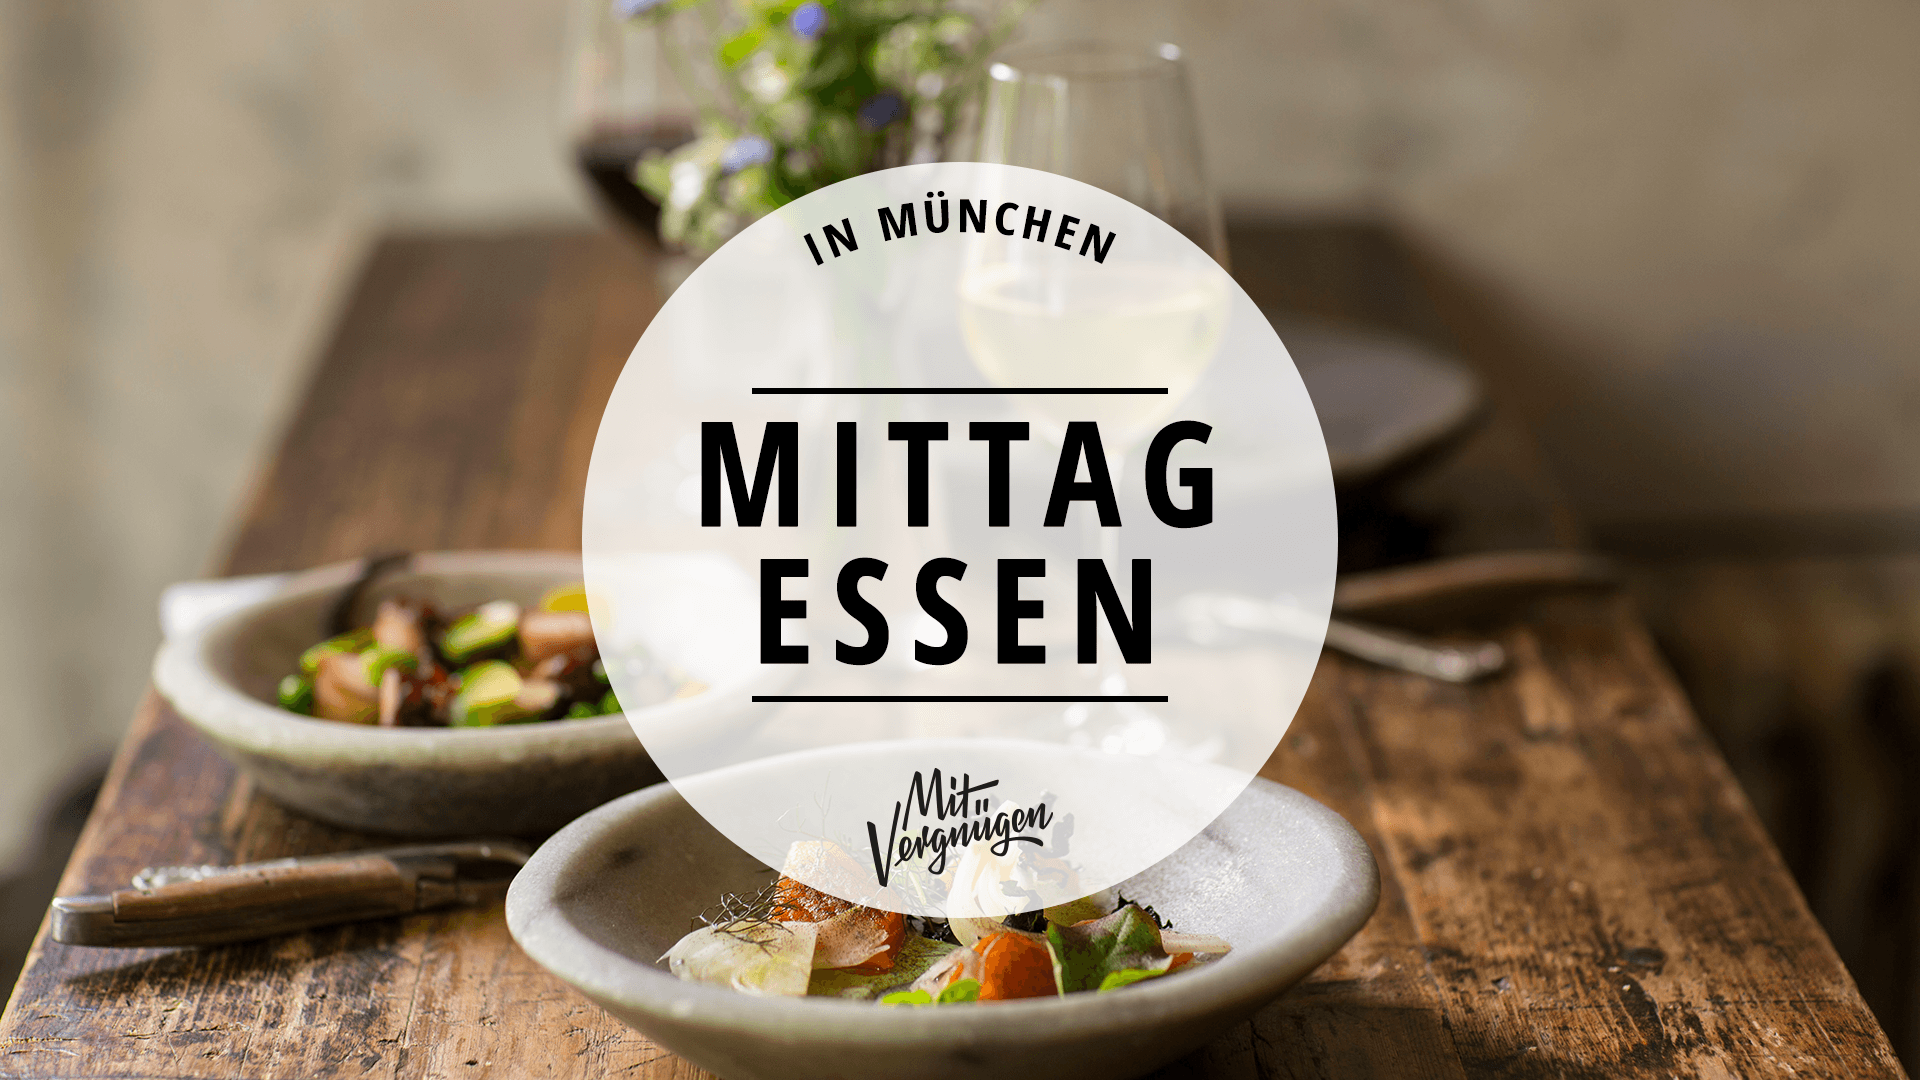 21 Orte zum Mittagessen in München | Mit Vergnügen München